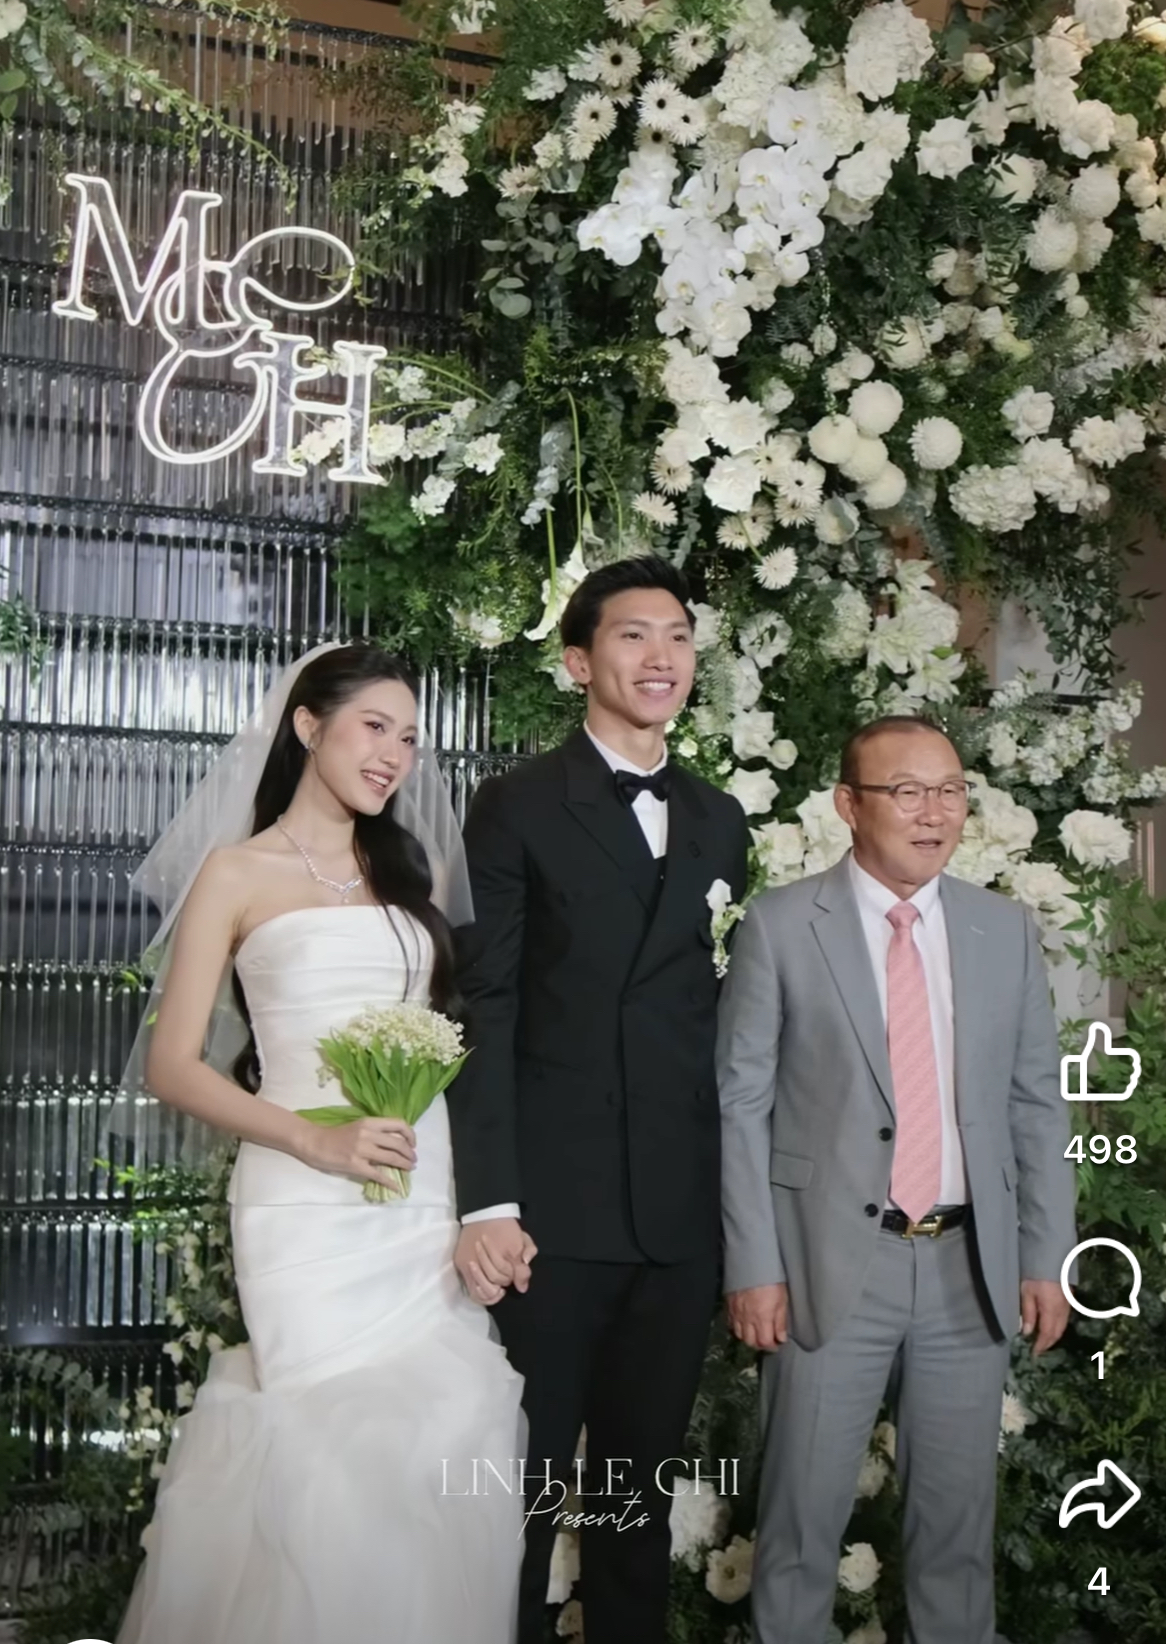 Nguyên nhân HLV Park Hang Seo vắng mặt tại đám cưới Quang Hải - Chu Thanh Huyền ở Hà Nội tối 6/4 - ảnh 6